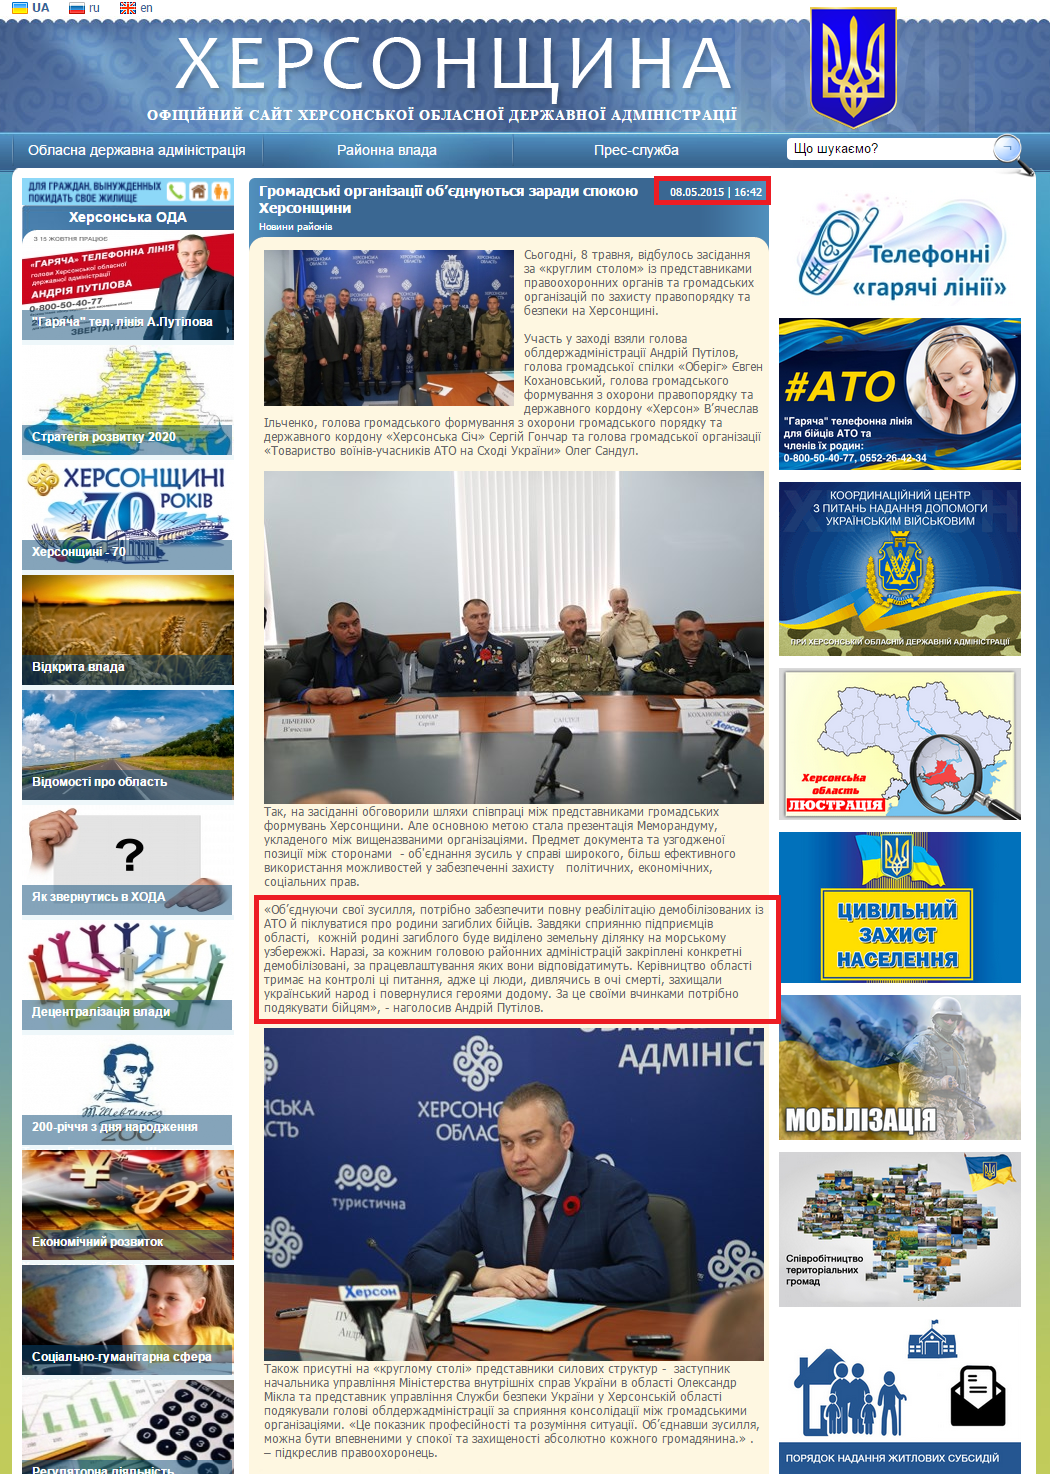 http://www.khoda.gov.ua/ua/news/obshhestvennye-organizacii-obedinyayutsya-radi-pokoya-hersonshhiny